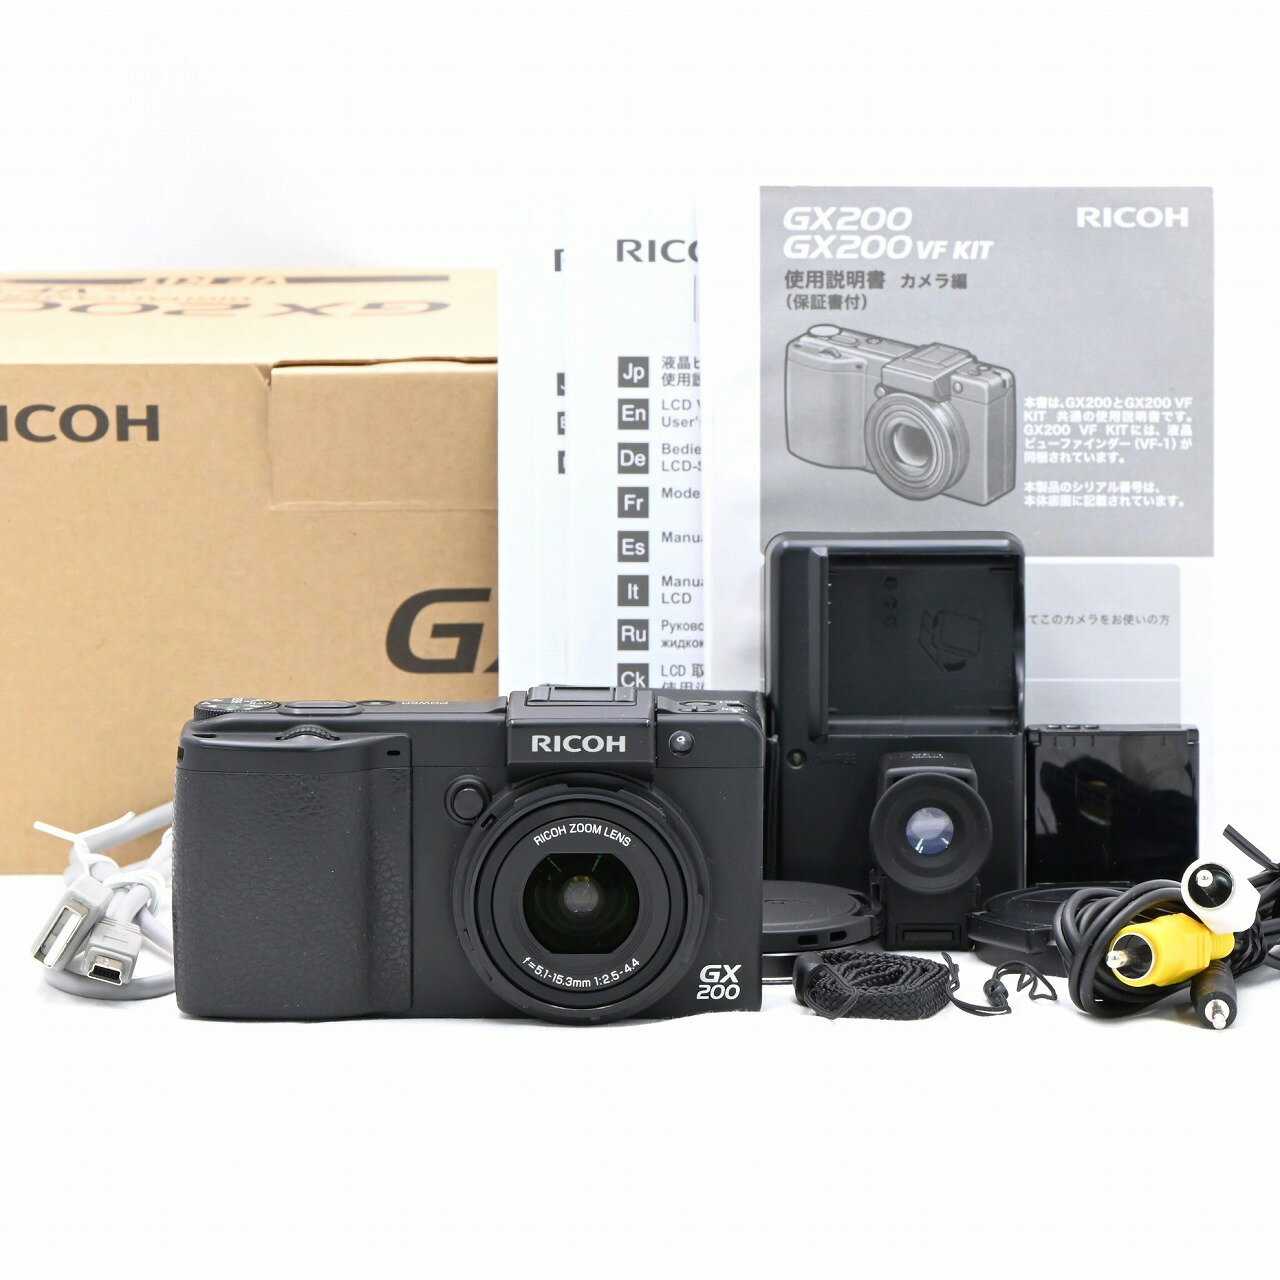 RICOH リコー GX200VFKit コンパクトデジタルカメラ【中古】